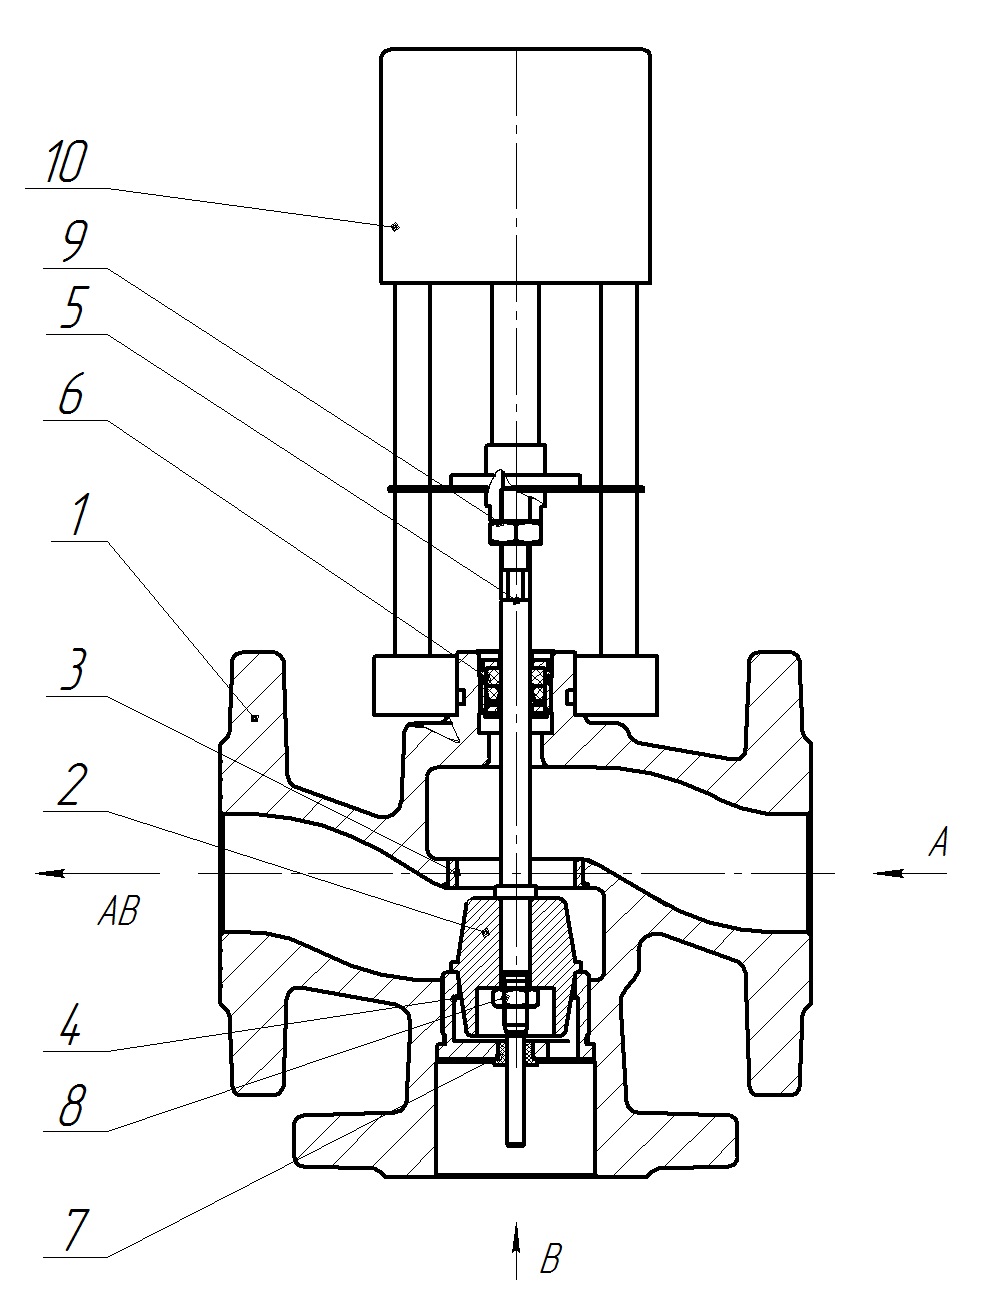 Клапан регулирующий трехходовой разделительный DN.ru 23ч901нж Ду32 Ру16 Kvs16 серый чугун СЧ20, фланцевый, Tmax до 150°С с электроприводом Катрабел TW-500-XD220